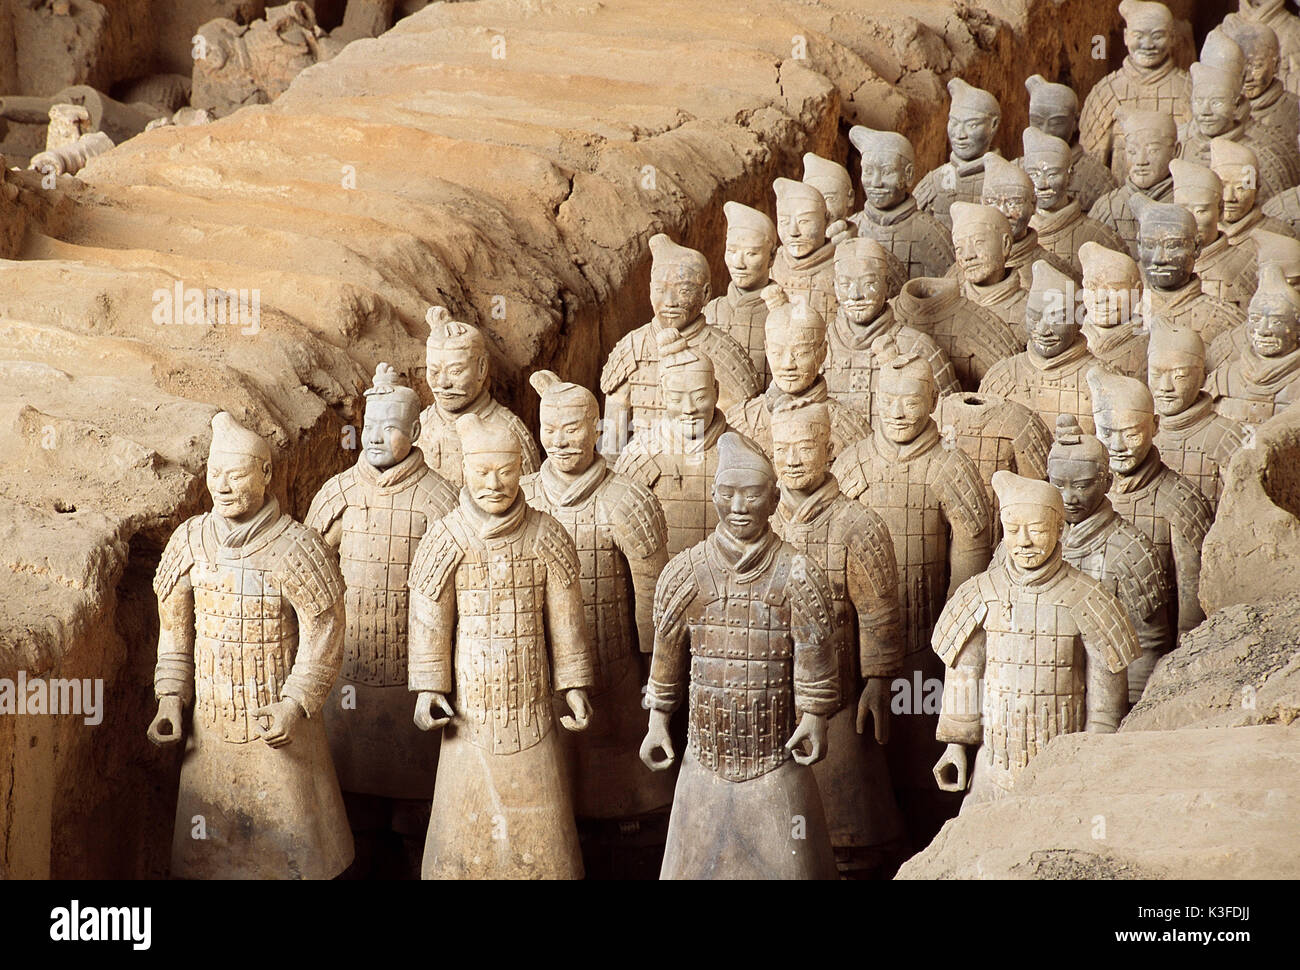 Xi An Armee Terrakottafiguren of the emperor's Qin Shi Huangdi, Sian Hsian province of Shaanxi, China Stock Photo